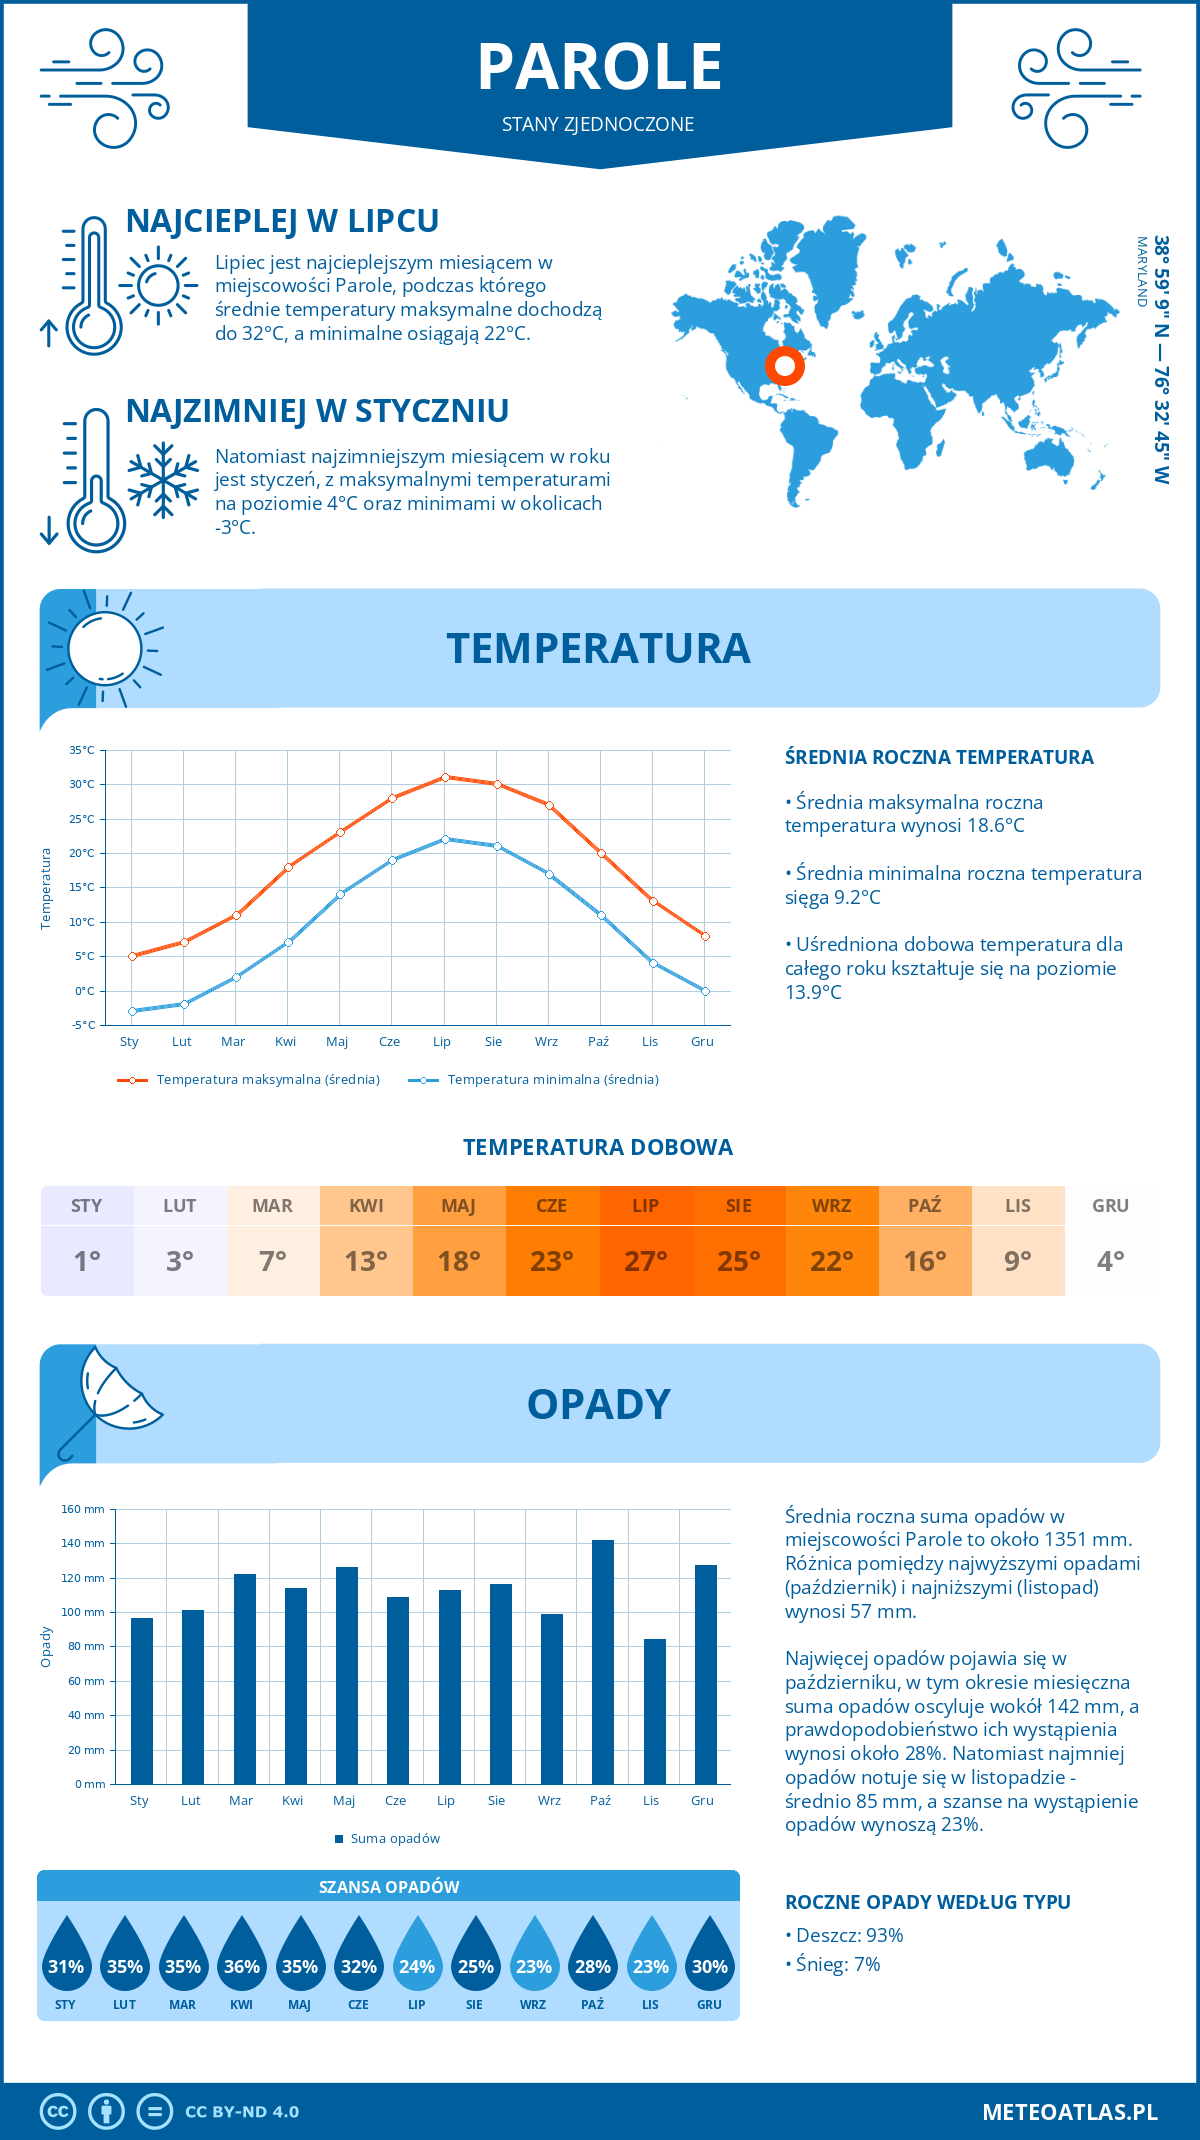 Pogoda Parole (Stany Zjednoczone). Temperatura oraz opady.